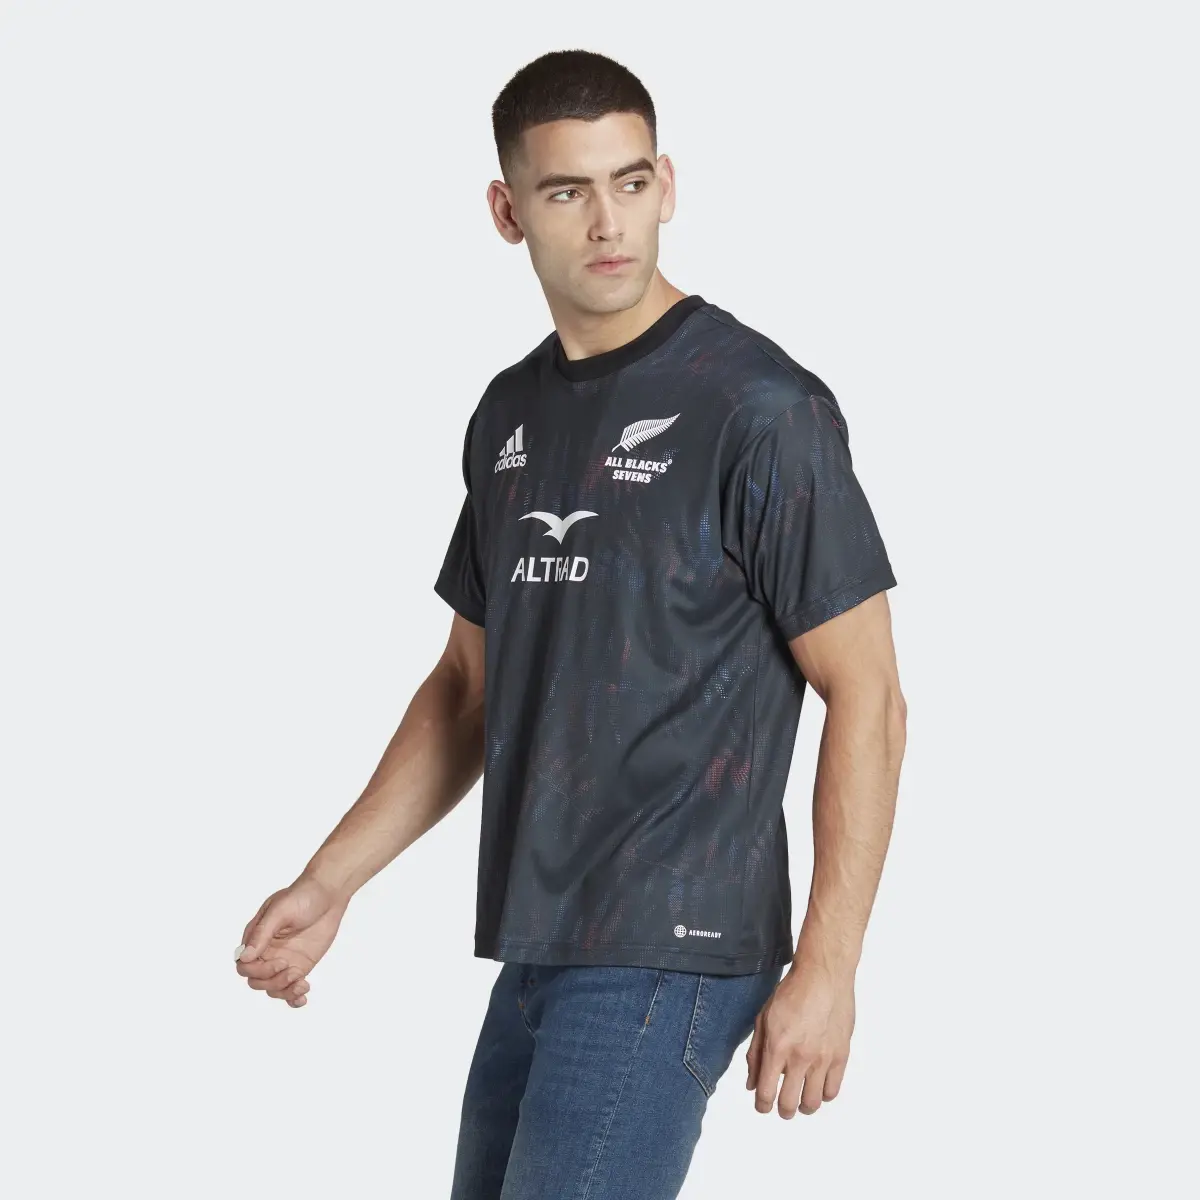 Adidas T-shirt Domicile All Blacks Sevens (Non genré). 2